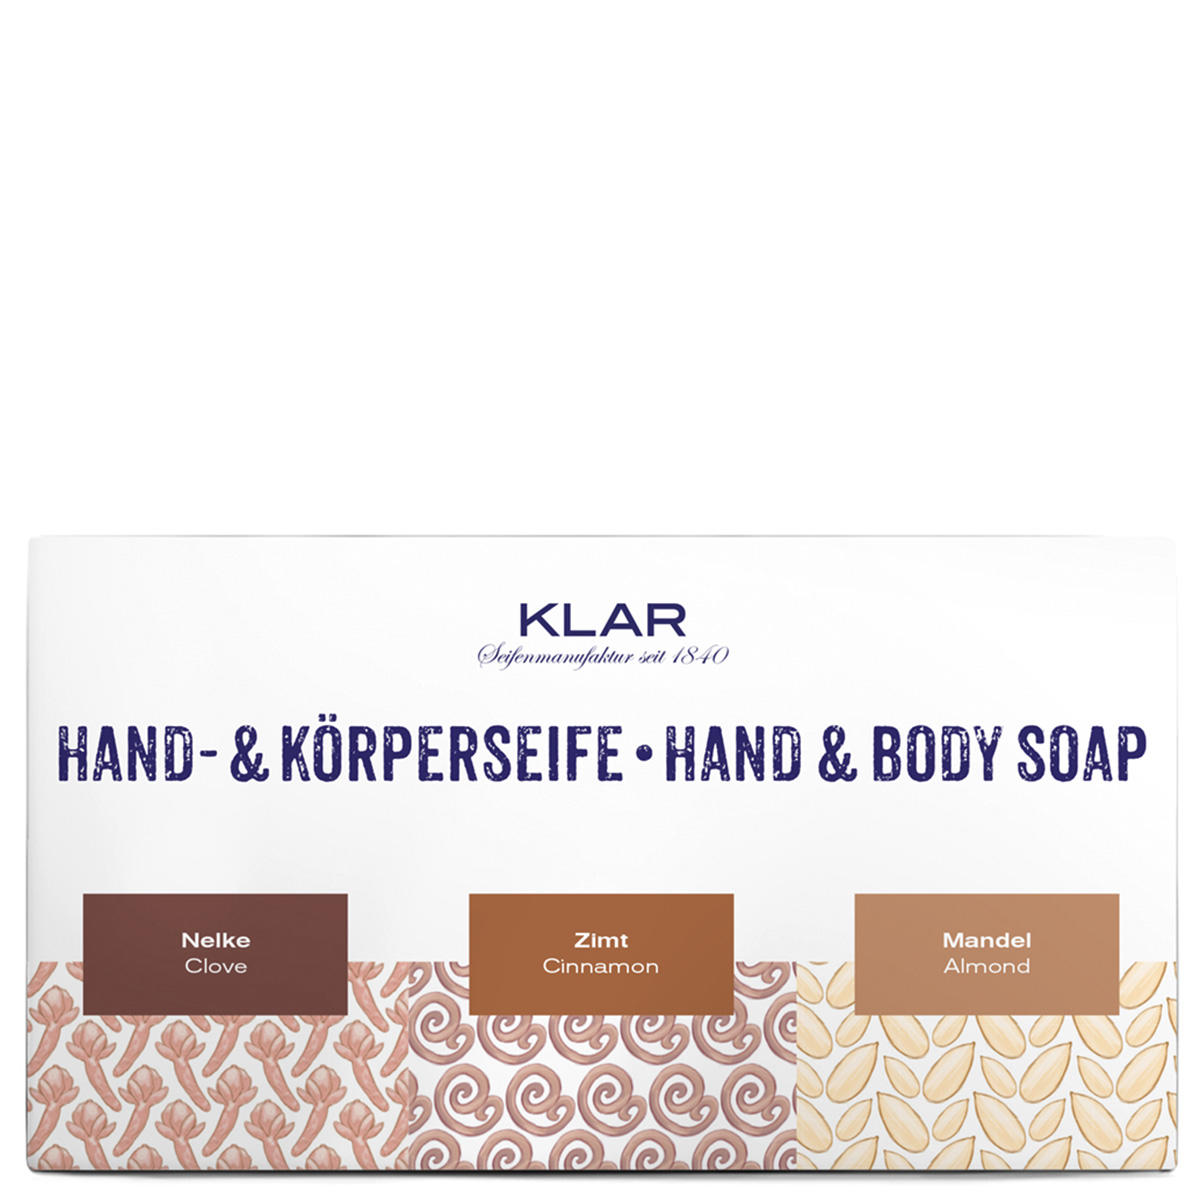 KLAR Spice soap set  - 1